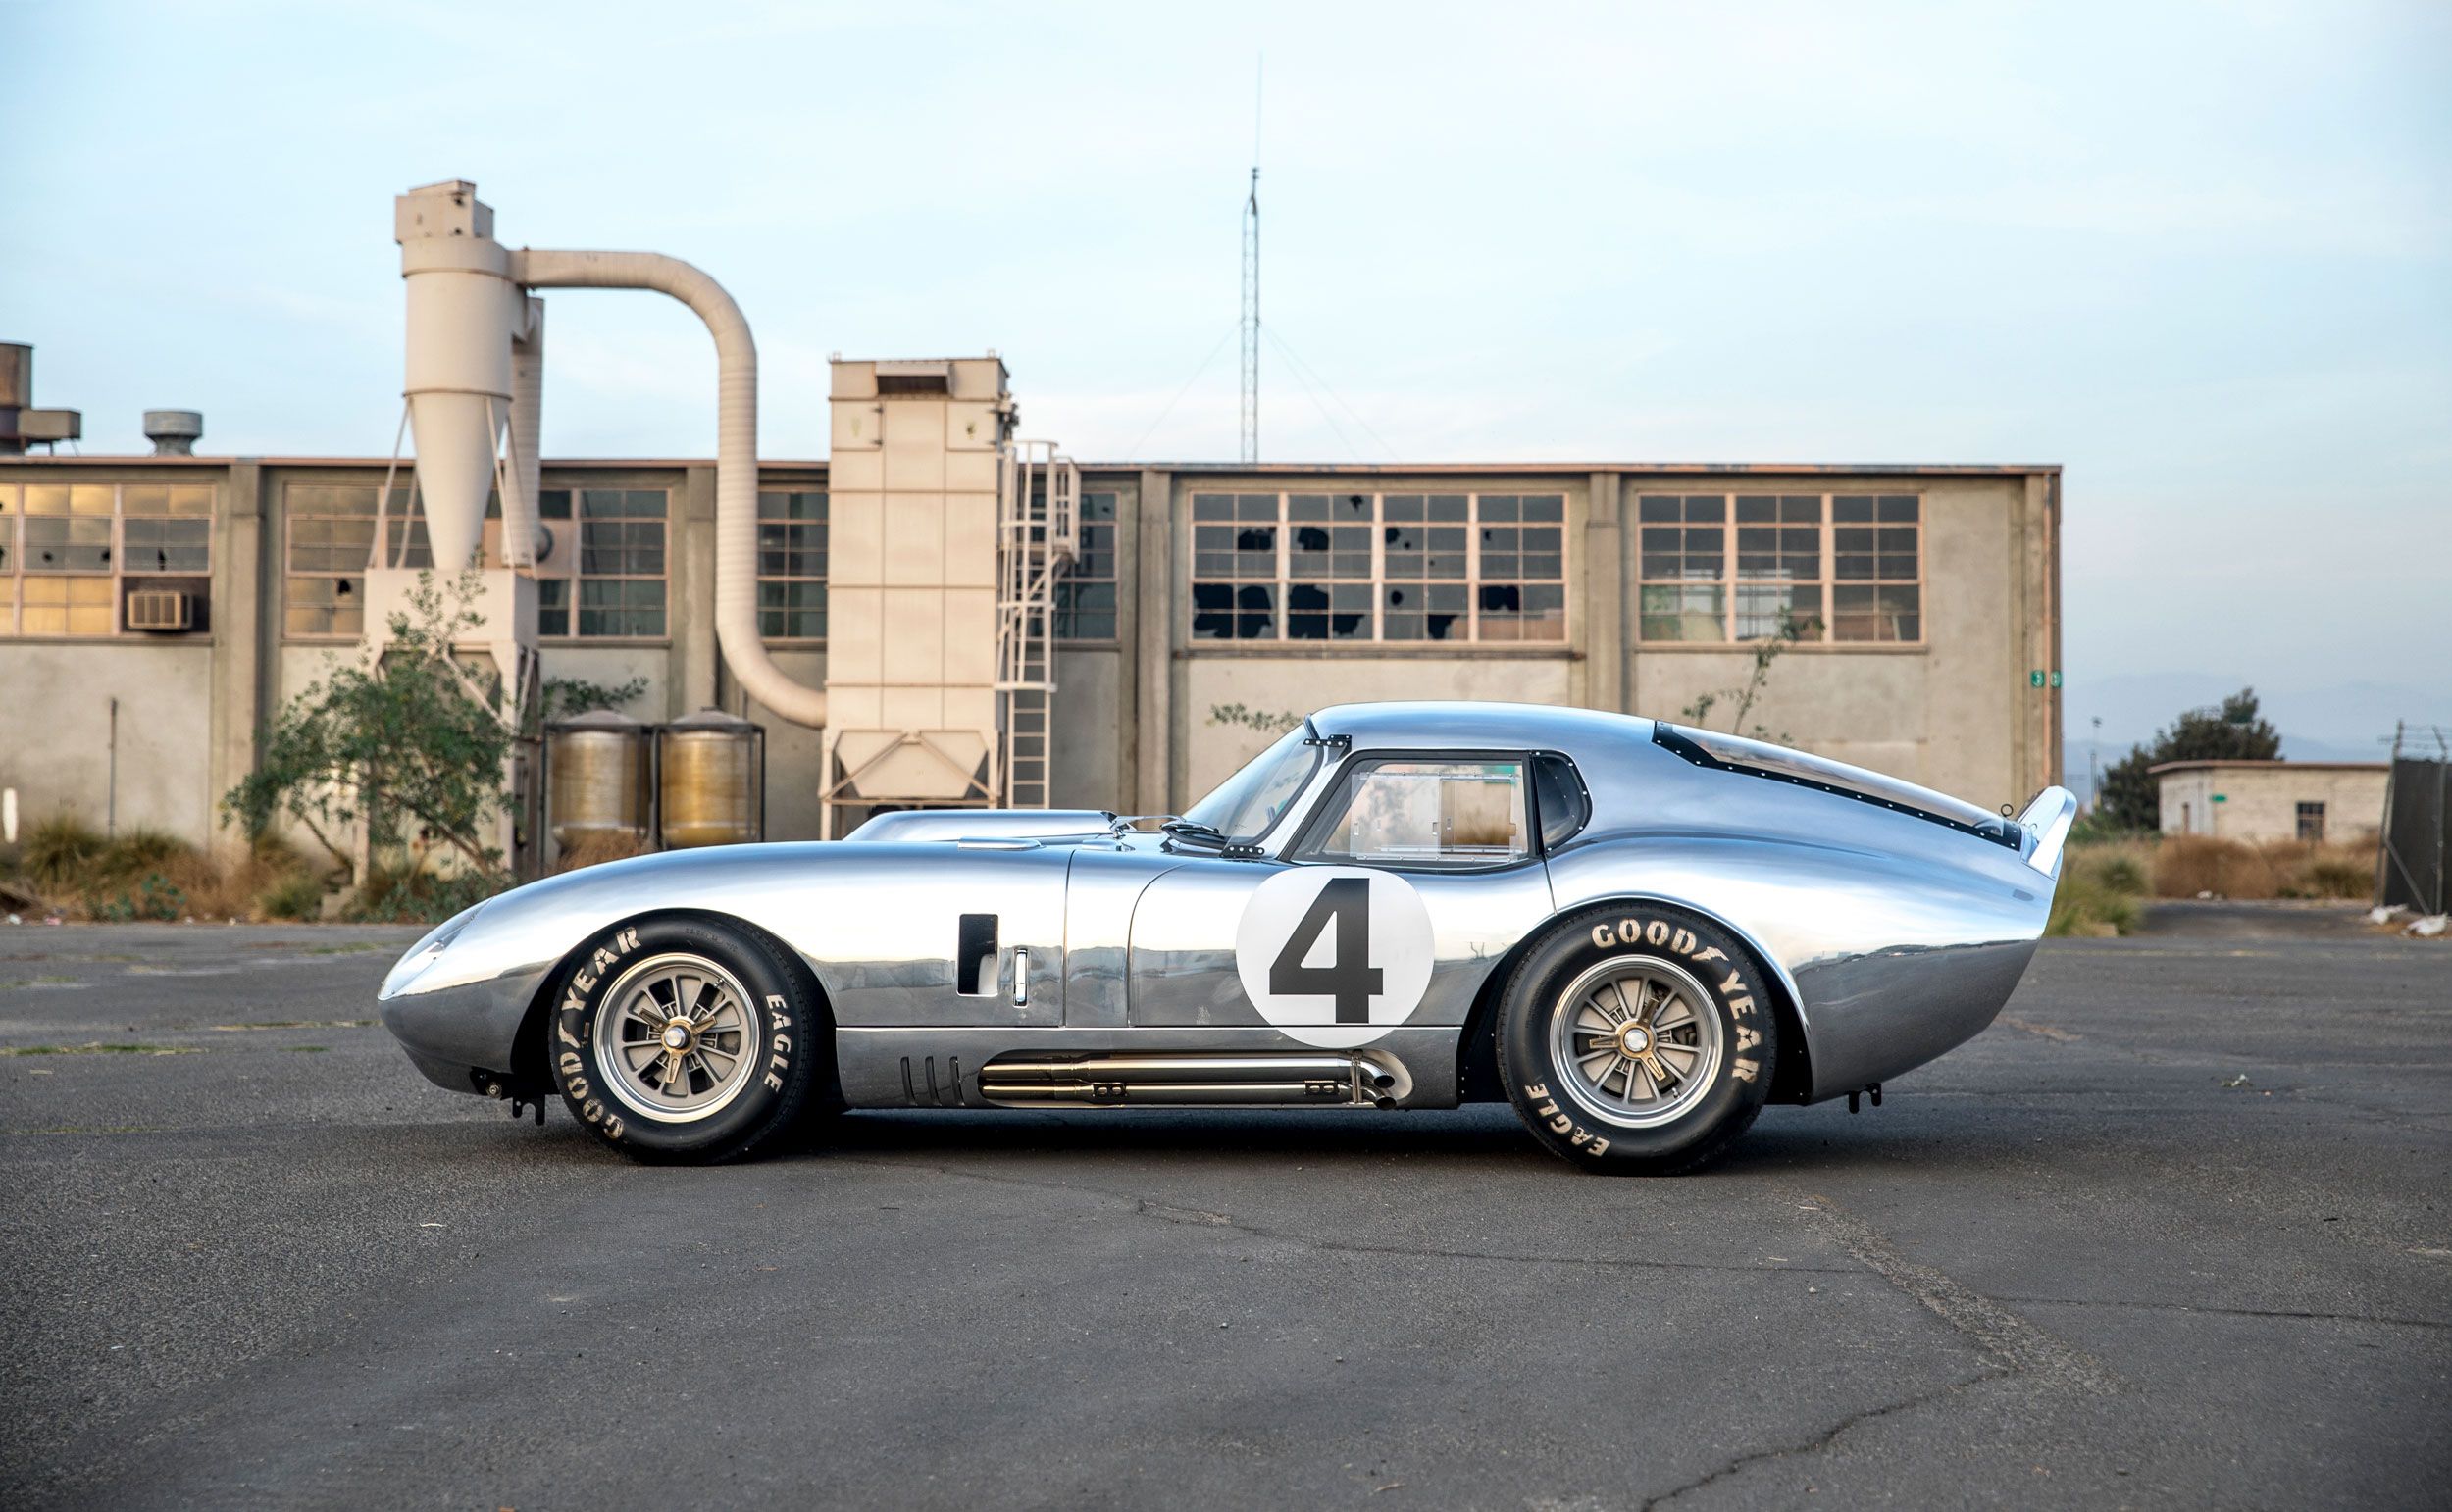 1964 Shelby Cobra Daytona Coupe parked